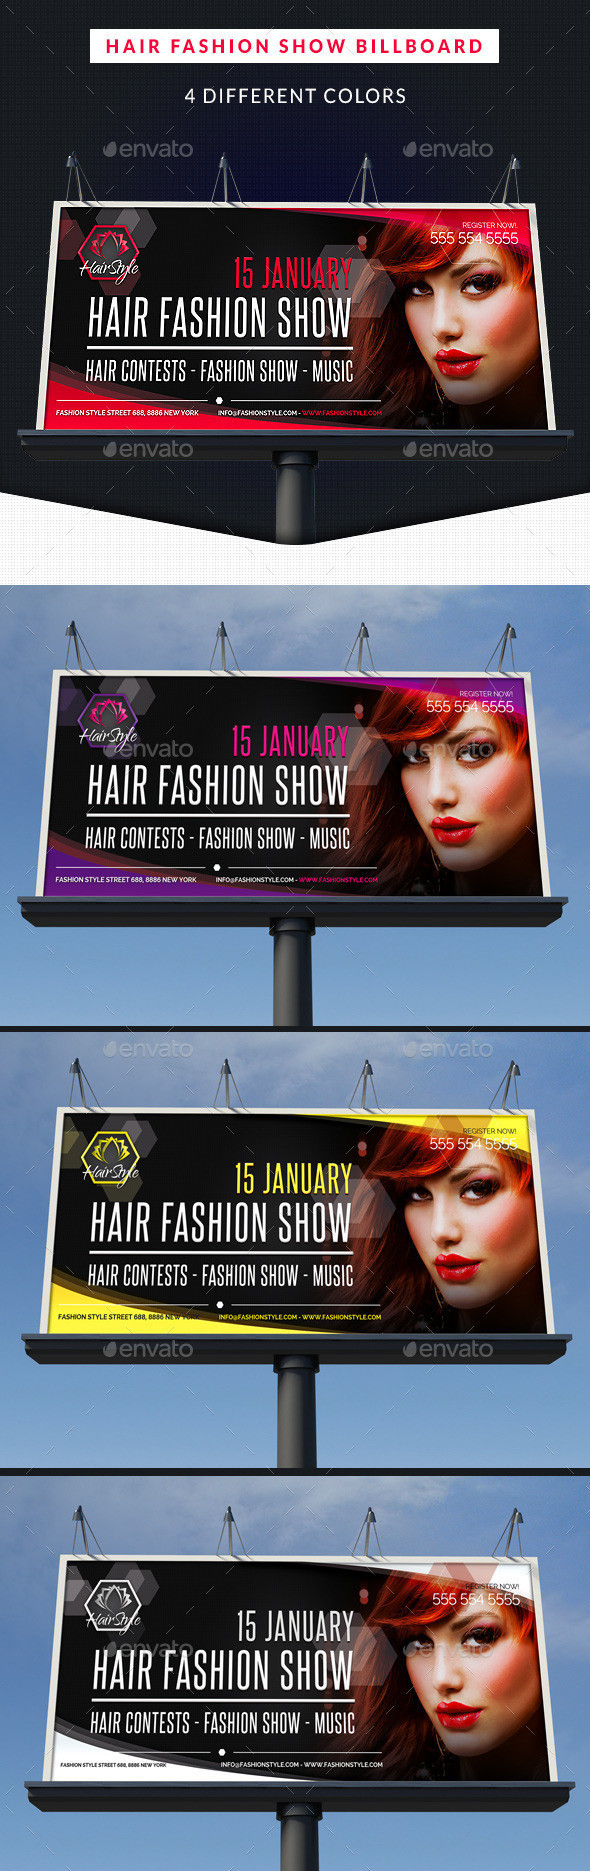 Hair fashion show billboard showcase